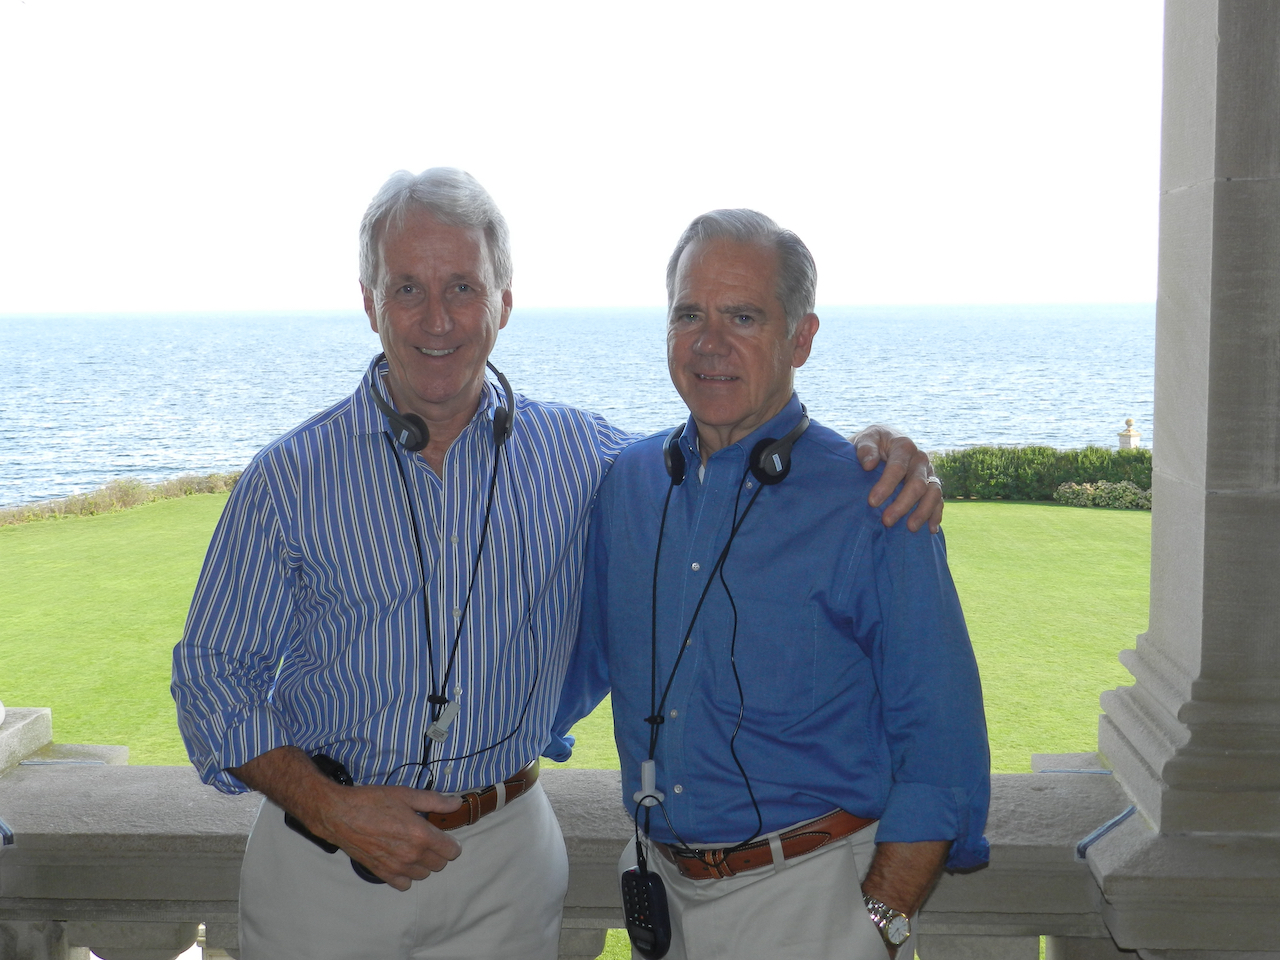 John and Jim in Newport, RI, 2010 or 2011.